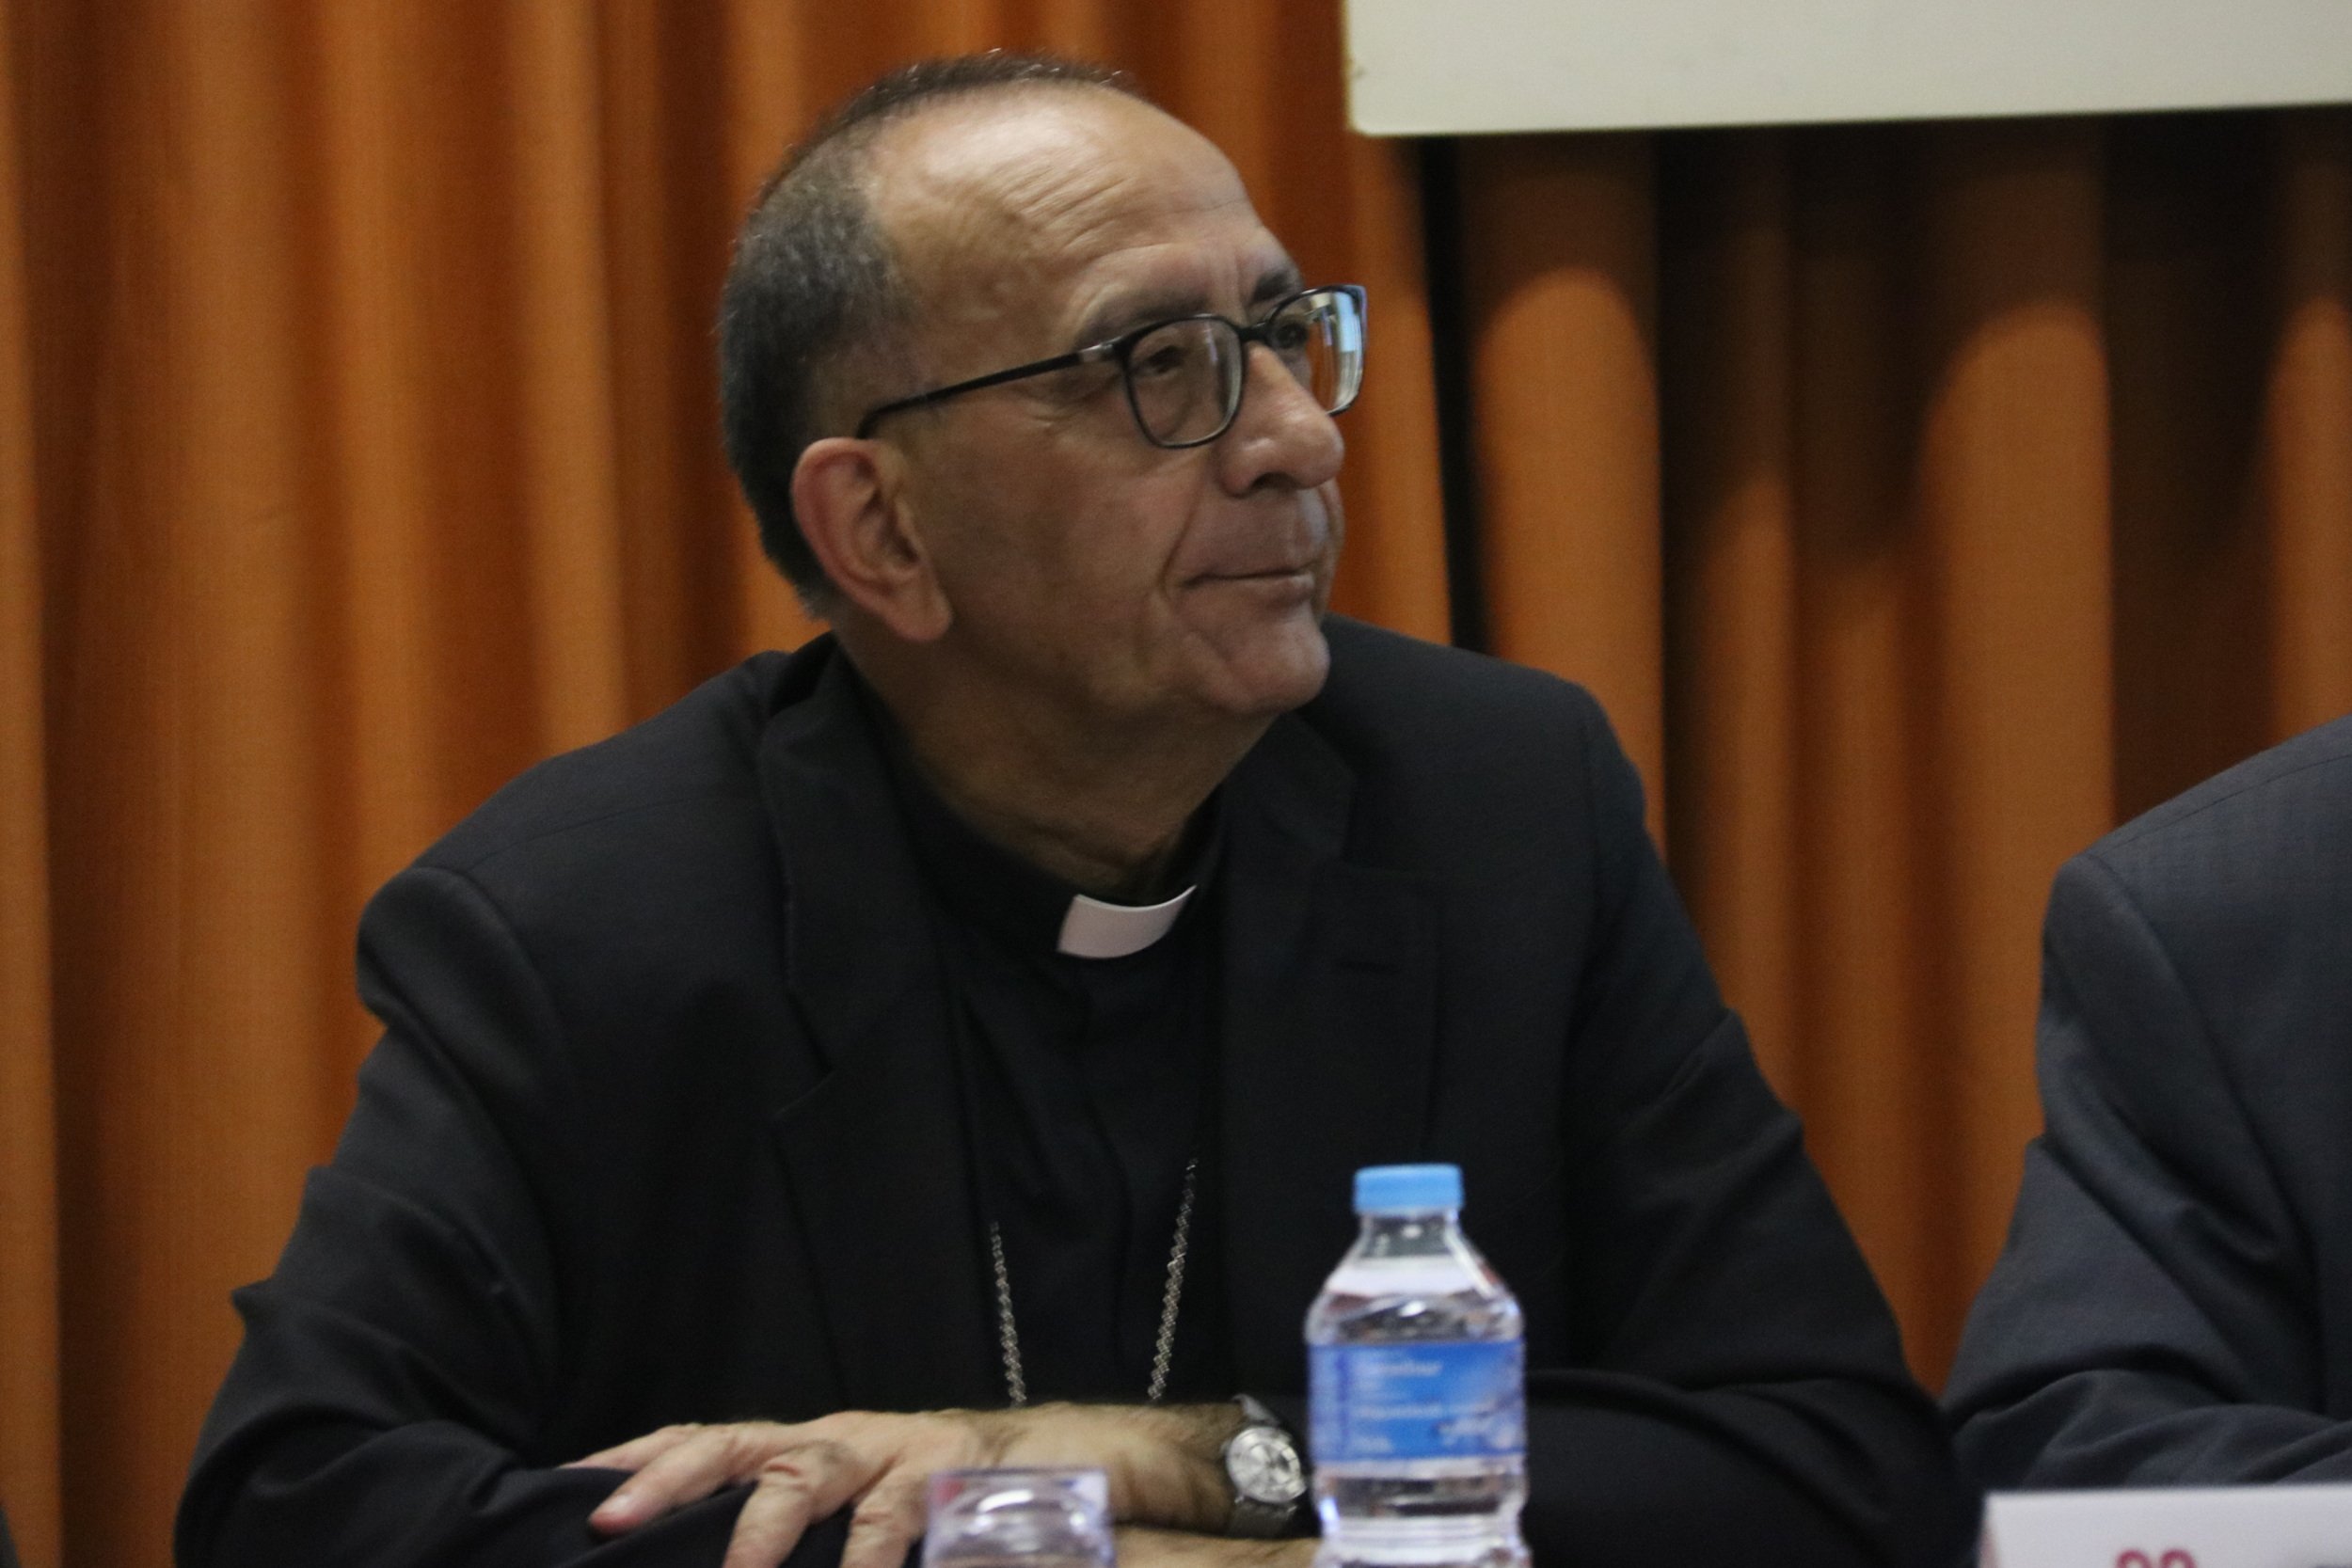 Los obispos de Catalunya piden perdón y se comprometen a investigar los abusos